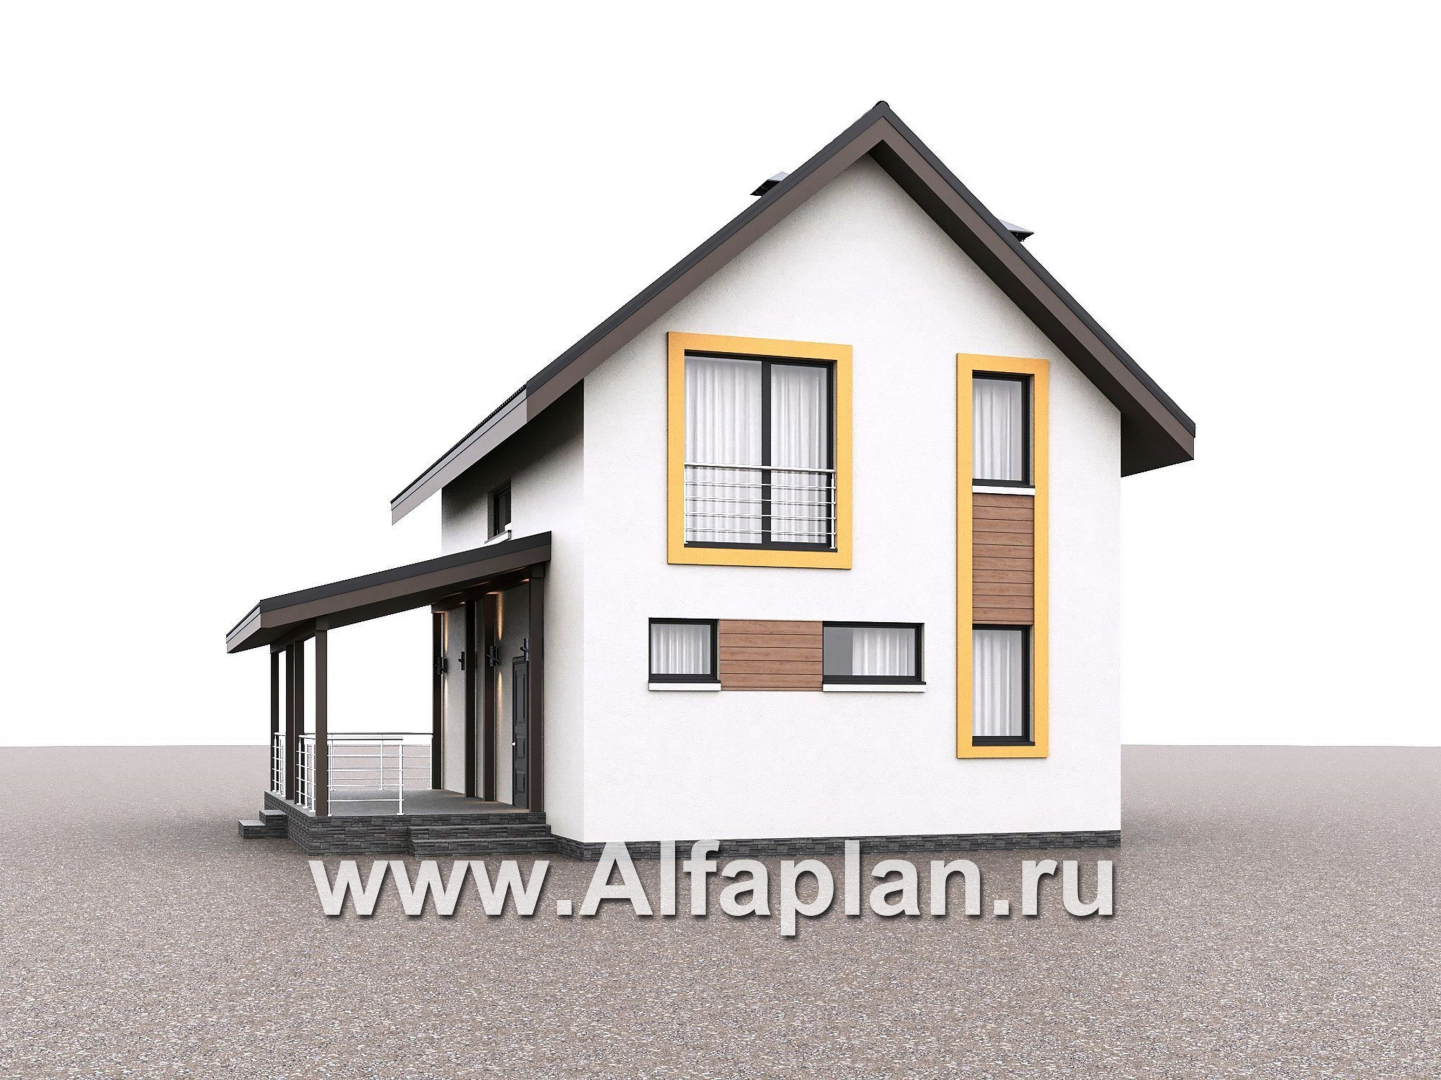 «Викинг» - проект дома, 2 этажа, с сауной и с террасой сбоку, в скандинавском стиле - дизайн дома №2